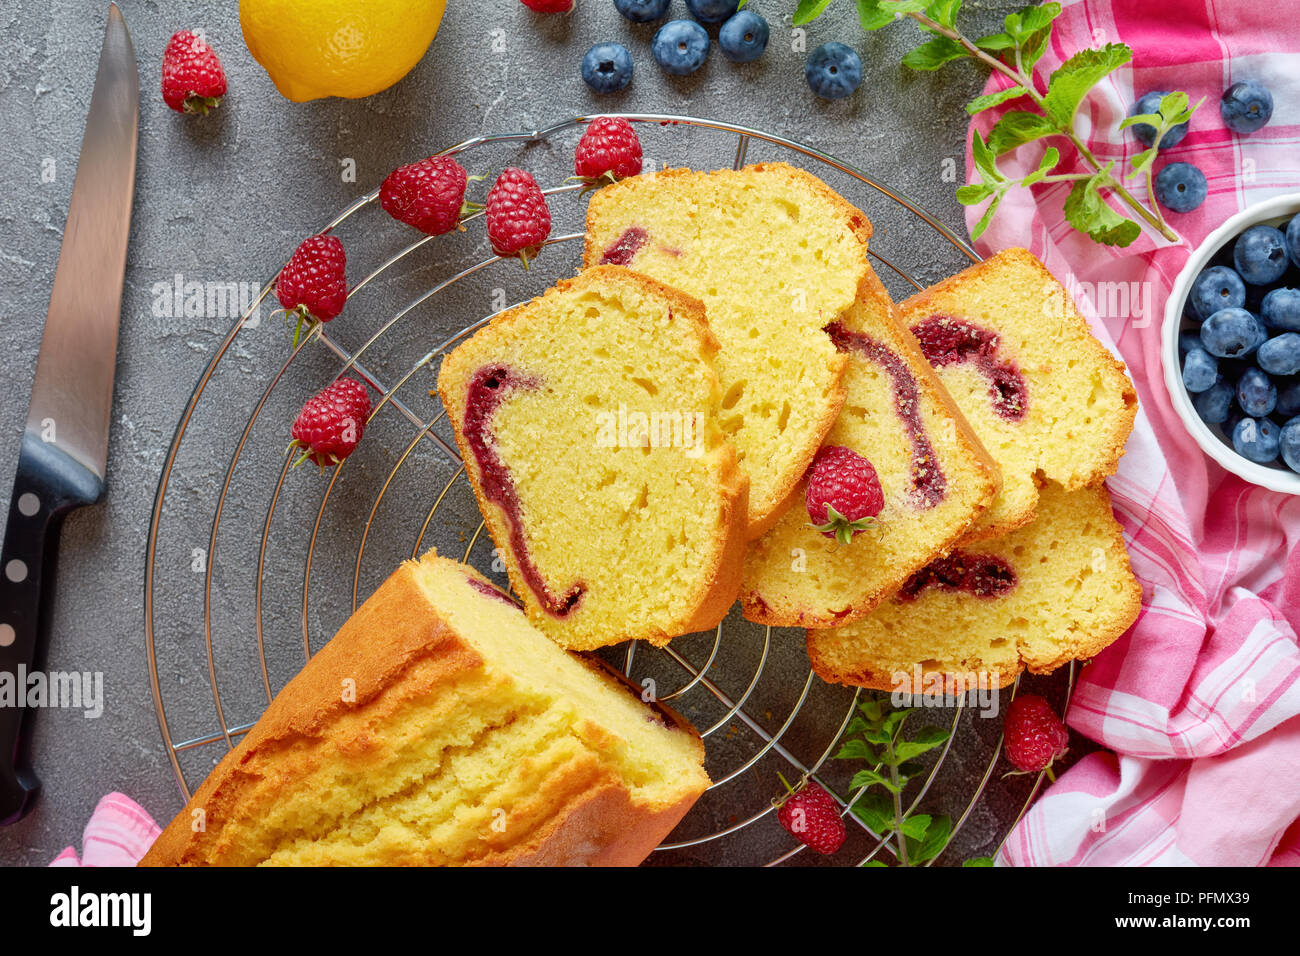 Frisch gebackene Scheiben geschnittenen Zitrone Pound Cake mit Beeren marmelade Füllung auch als Torte de voyage Kuchen auf einen konkreten Hintergrund mit Inhaltsstoffe bekannt, französisch c Stockfoto